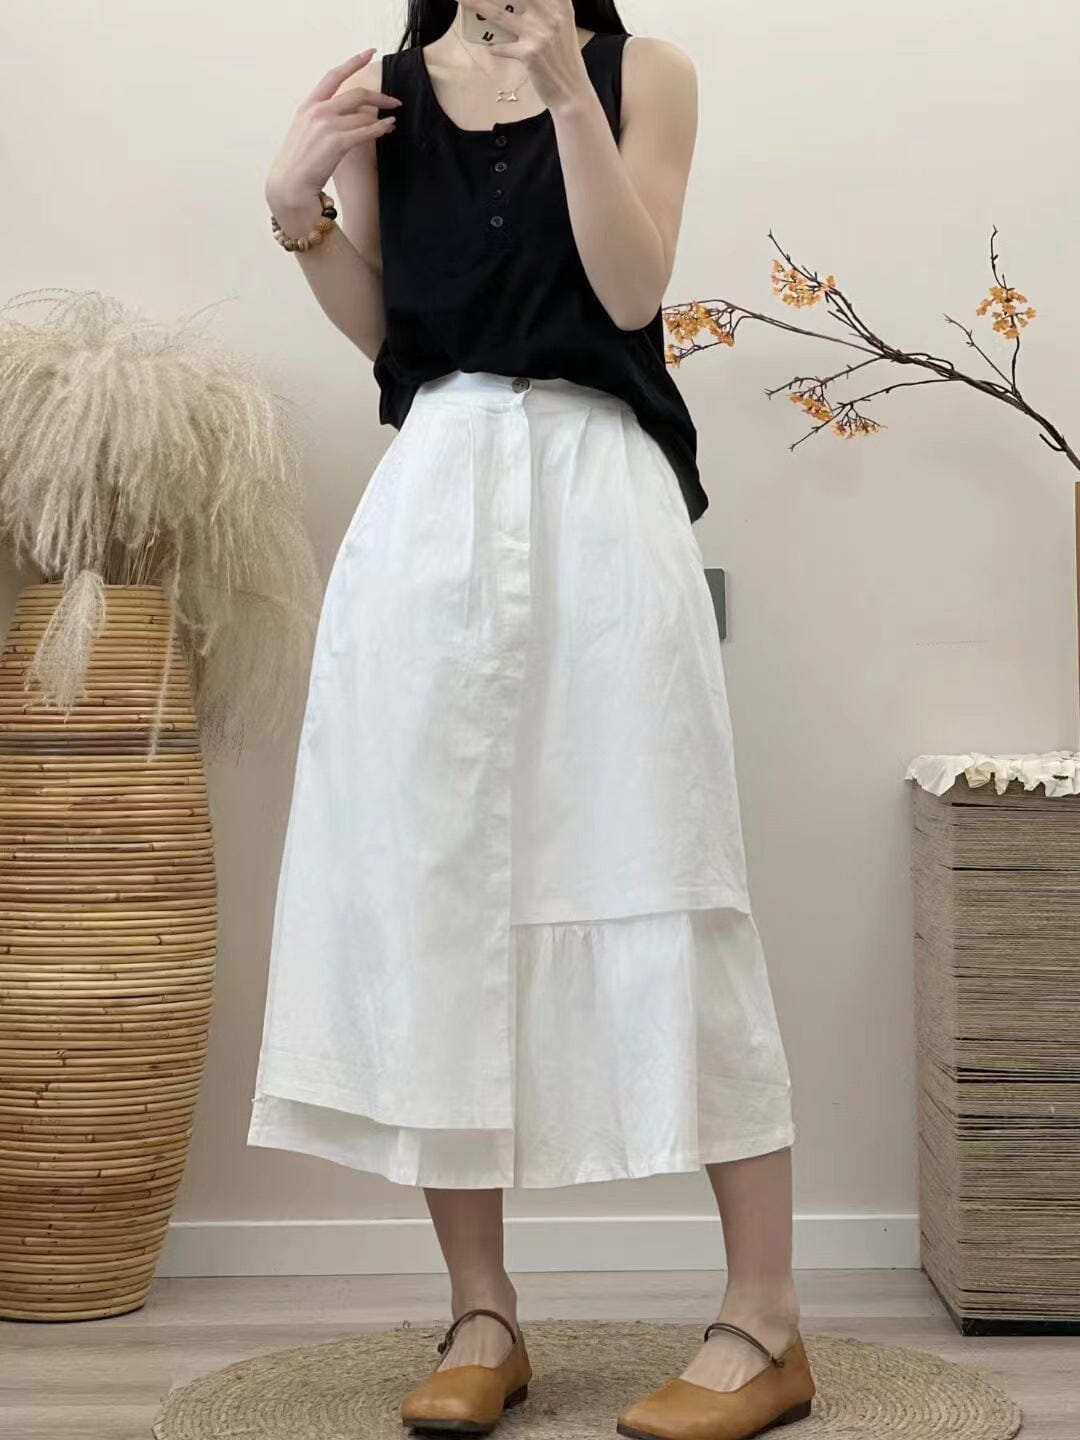 Summer Solid Casual Cotton Linen Irregular Skirt